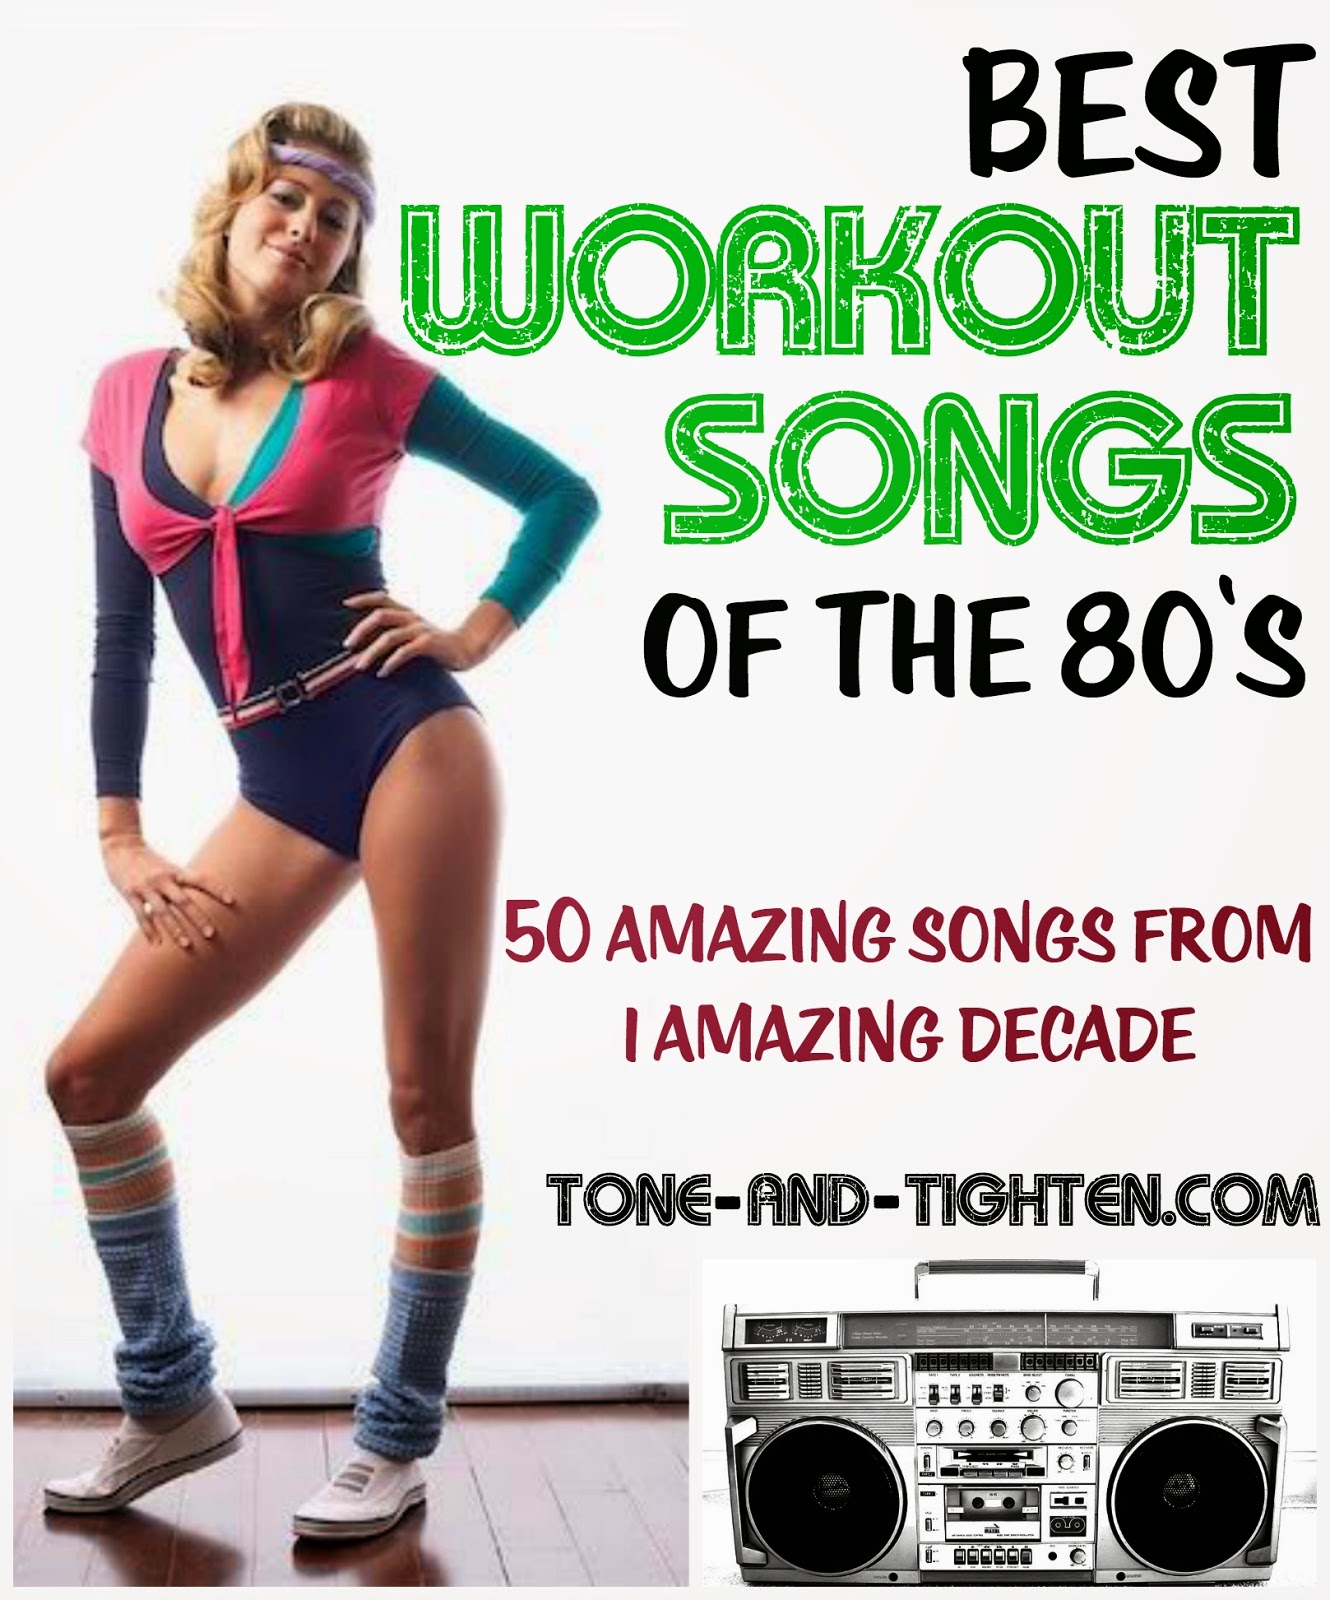 ¡50 de las mejores canciones de entrenamiento de la década de 1980! Lista de reproducción de ejercicios de los ochenta de Tone-and-Tighten.com's! Eighties workout playlist from Tone-and-Tighten.com